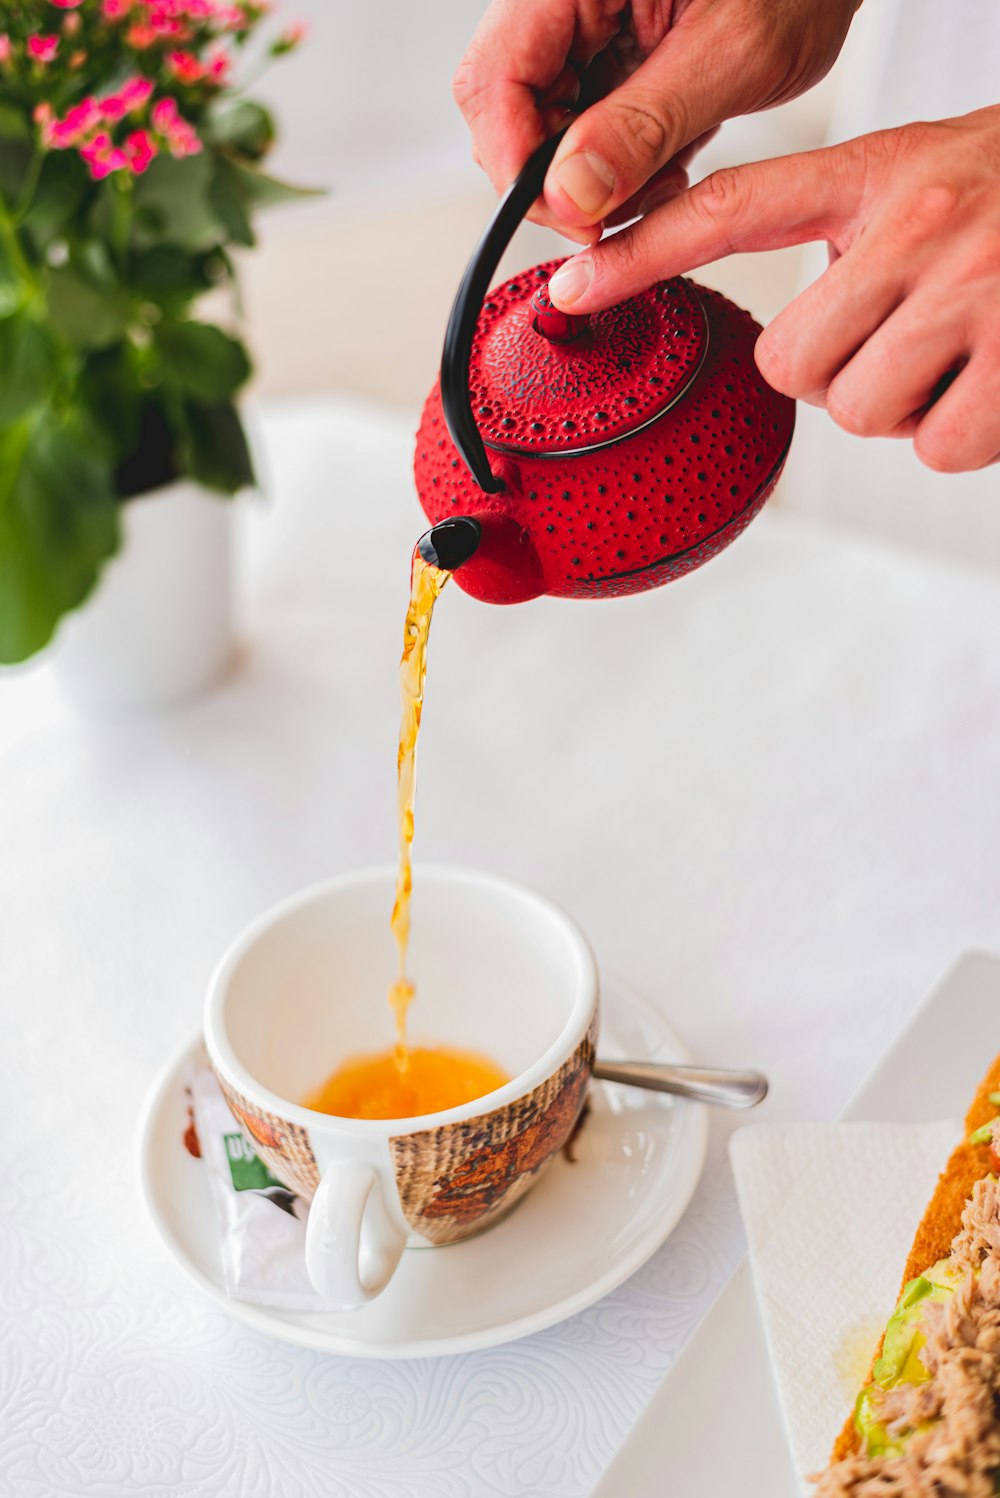 personne versant un liquide rouge sur une tasse à thé en céramique blanche